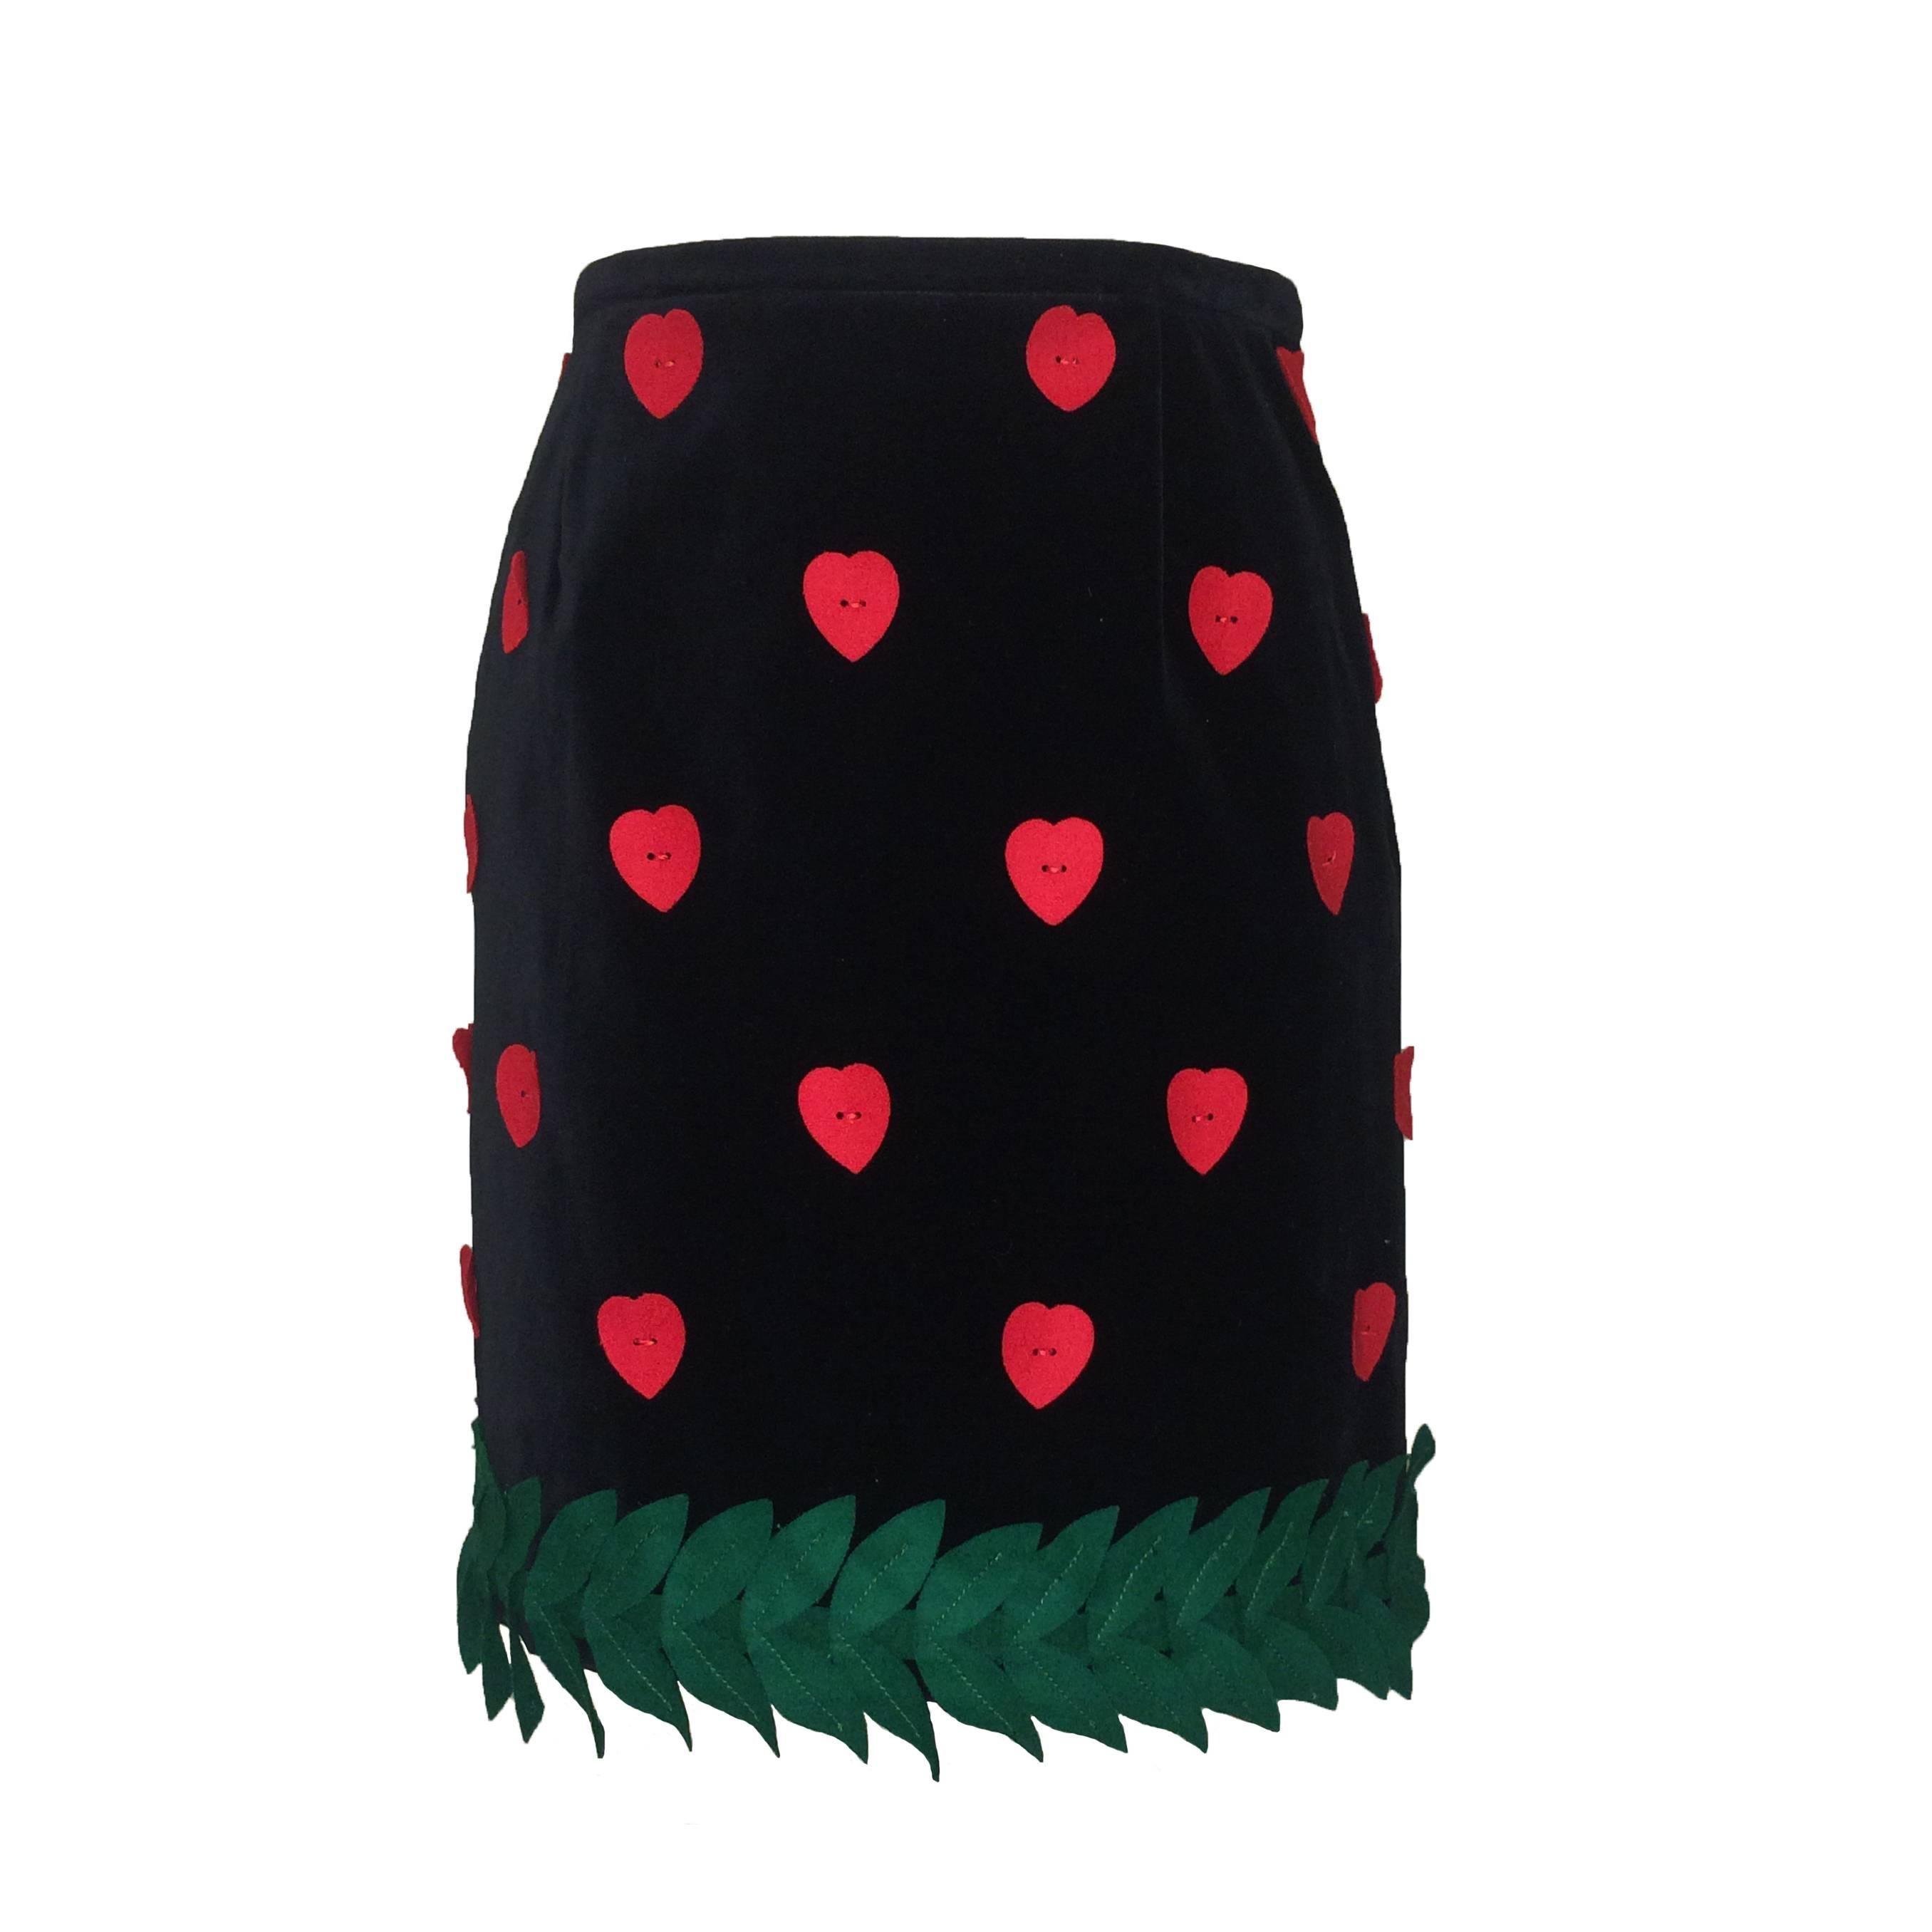 Moschino Cheap & Chic 90s Black Velvet Skirt with Felt Hearts & Leaves